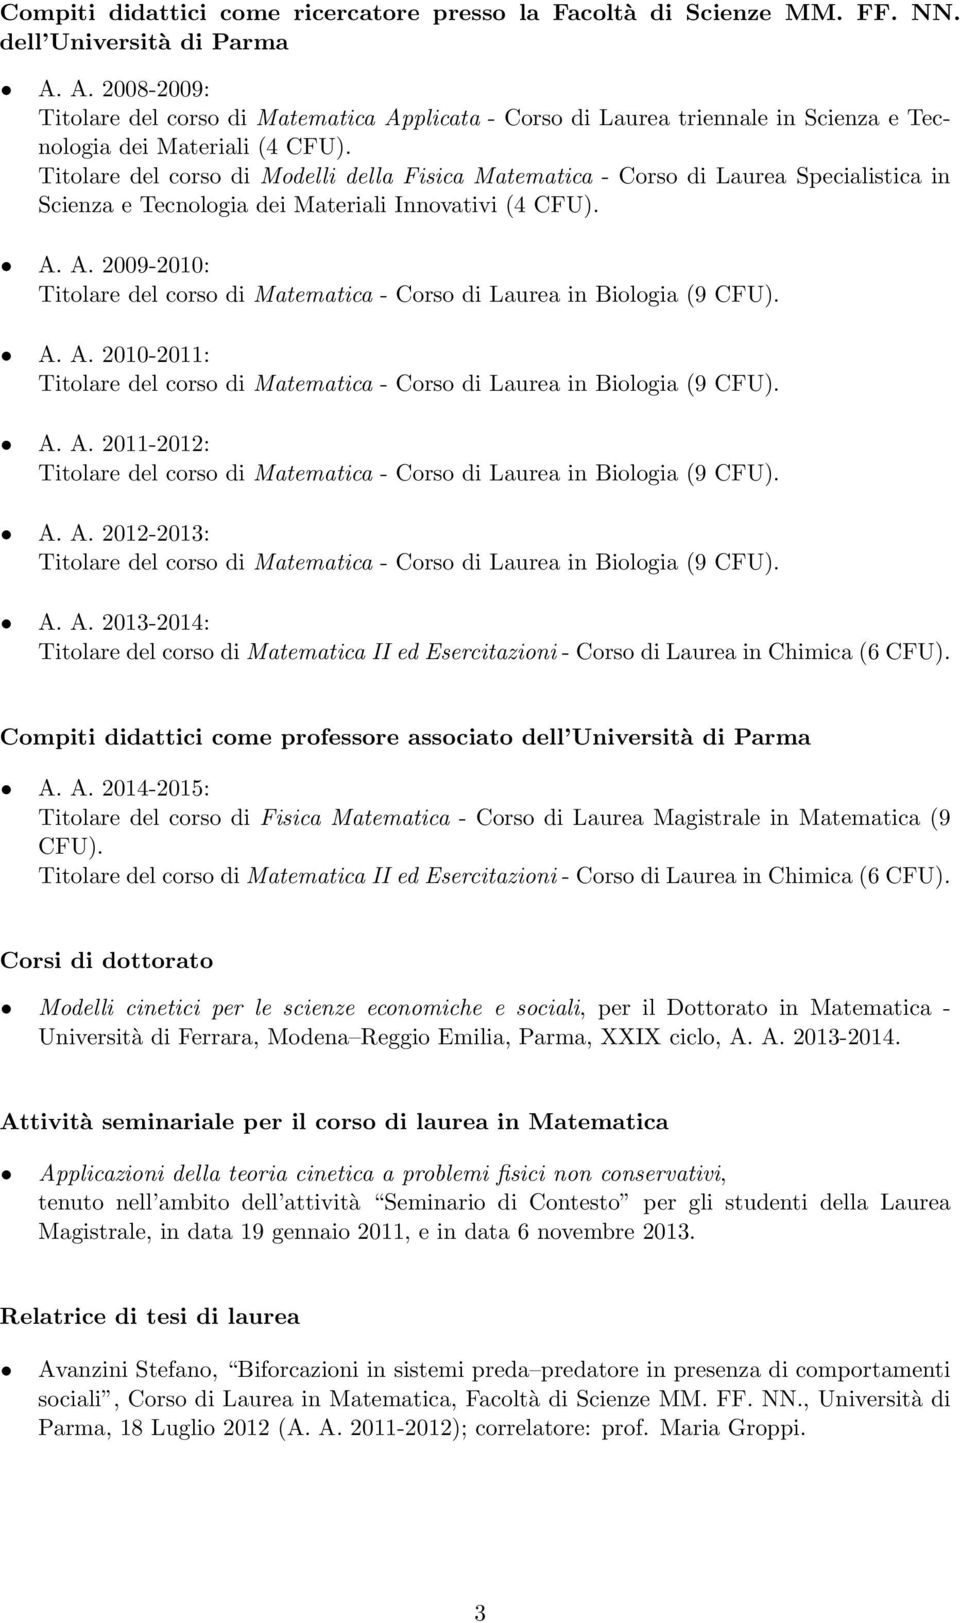 Titolare del corso di Modelli della Fisica Matematica - Corso di Laurea Specialistica in Scienza e Tecnologia dei Materiali Innovativi (4 CFU). A.